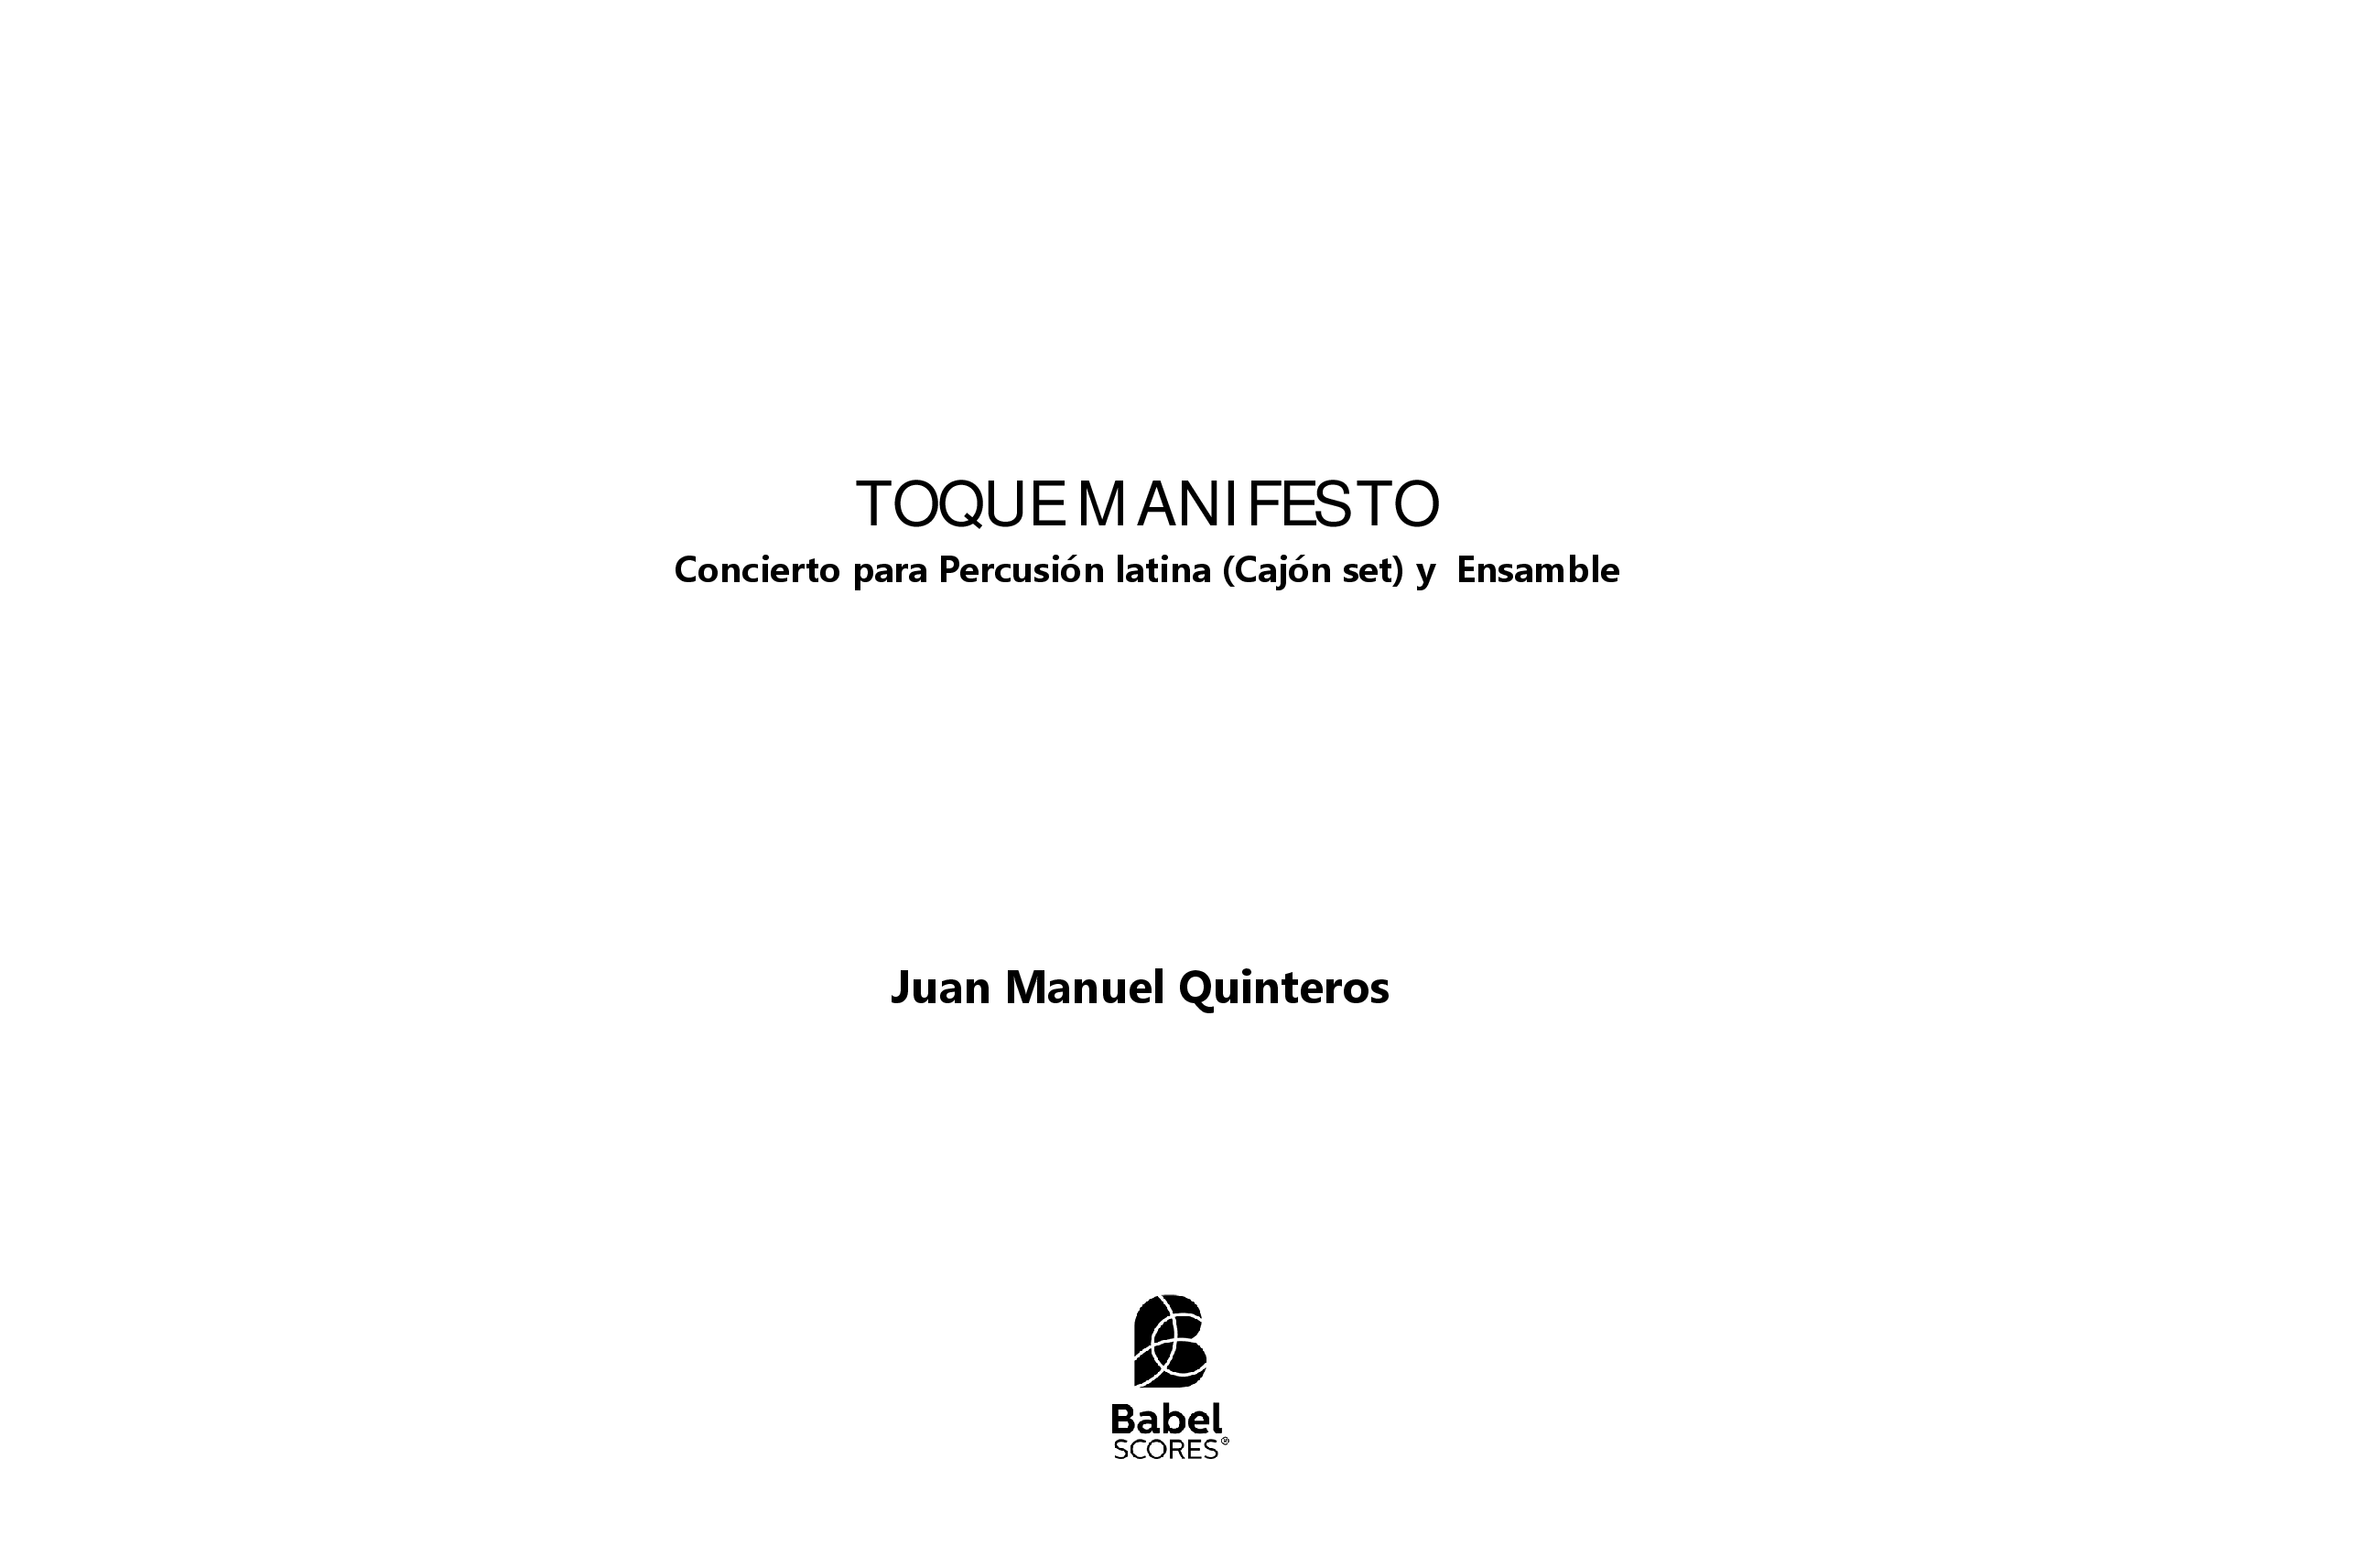 Toque Manifesto A4 z 3 1 695